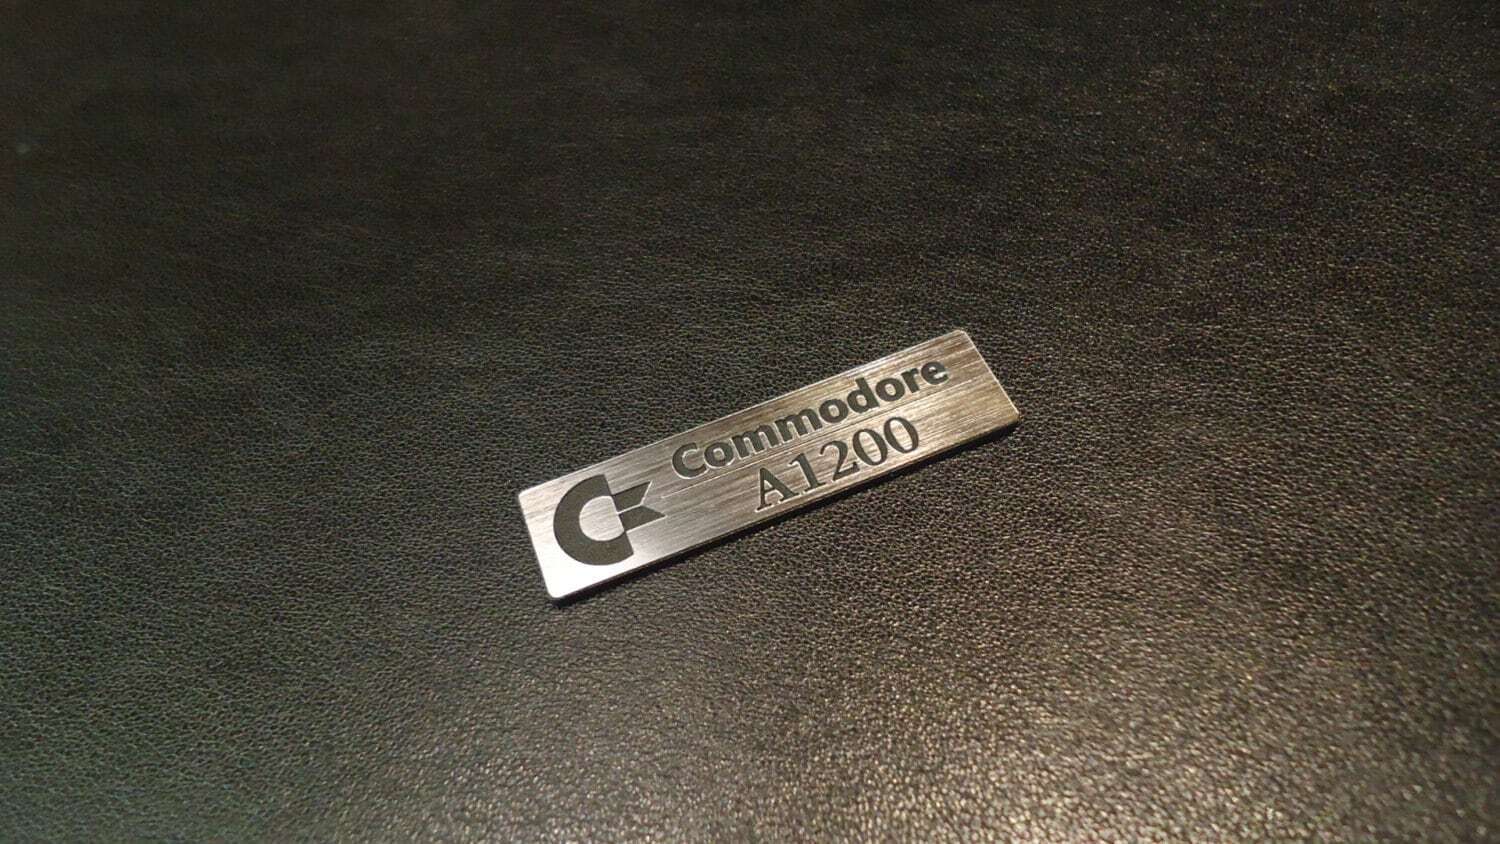 Commodore Amiga 1200 Logo / Sticker / Badge brushed aluminum 49 x 13 mm [263]